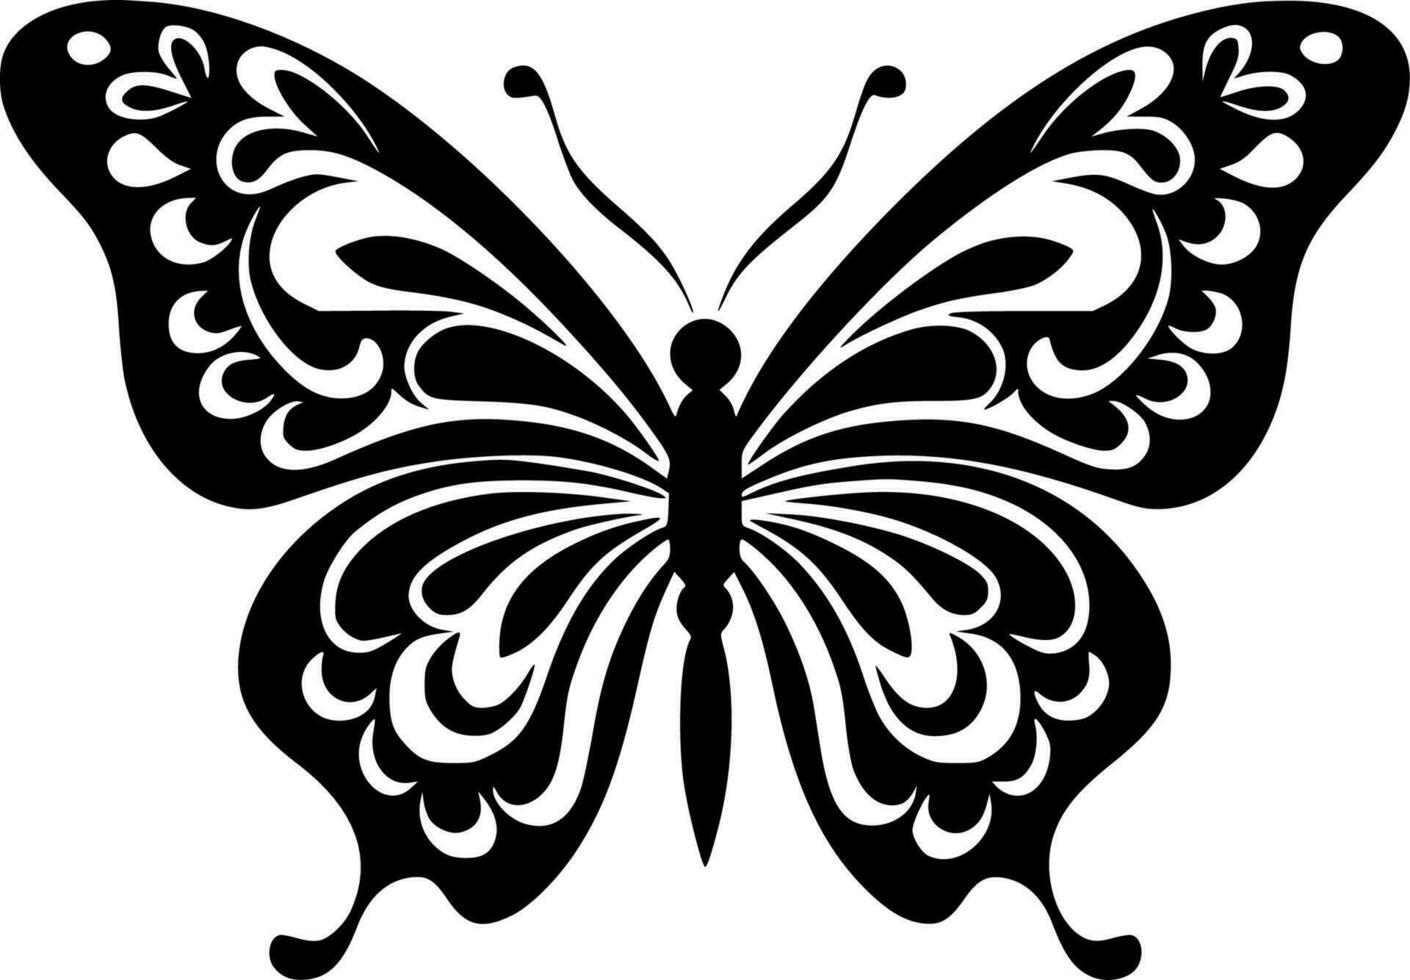 mariposa, negro y blanco vector ilustración